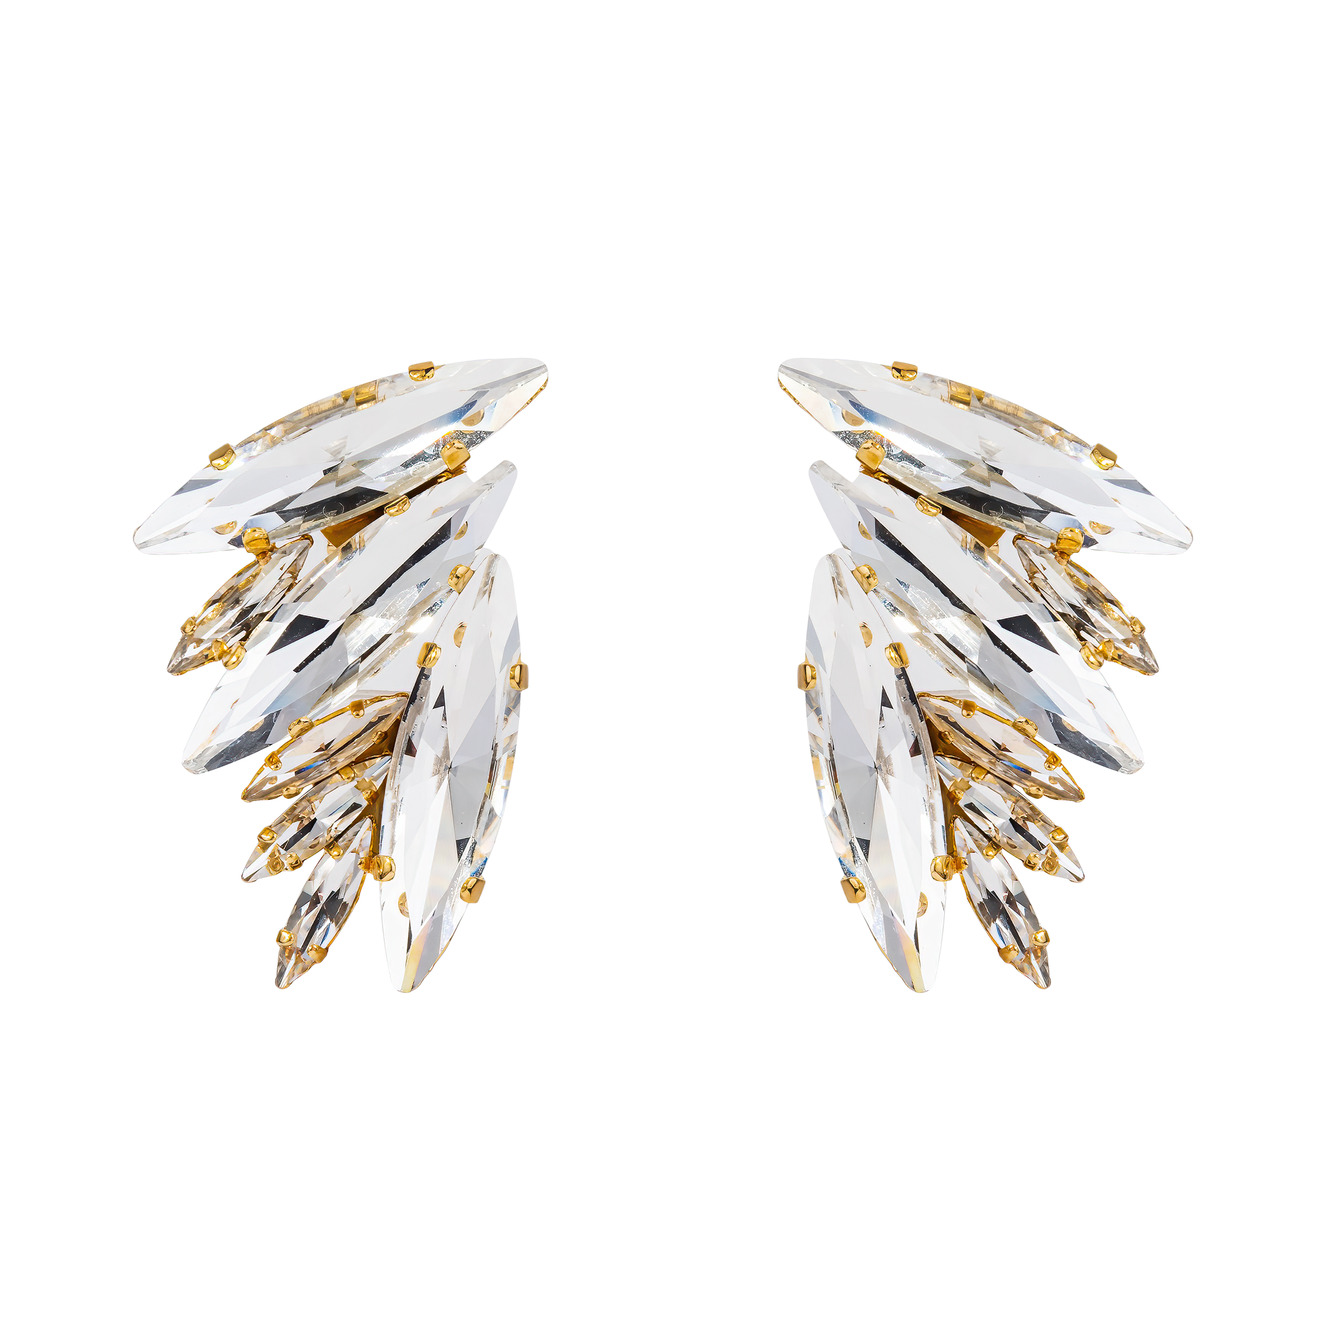 Ellen Conde Позолоченные массивные серьги в форме крыльев с крупными удлигненными кристалами цена и фото